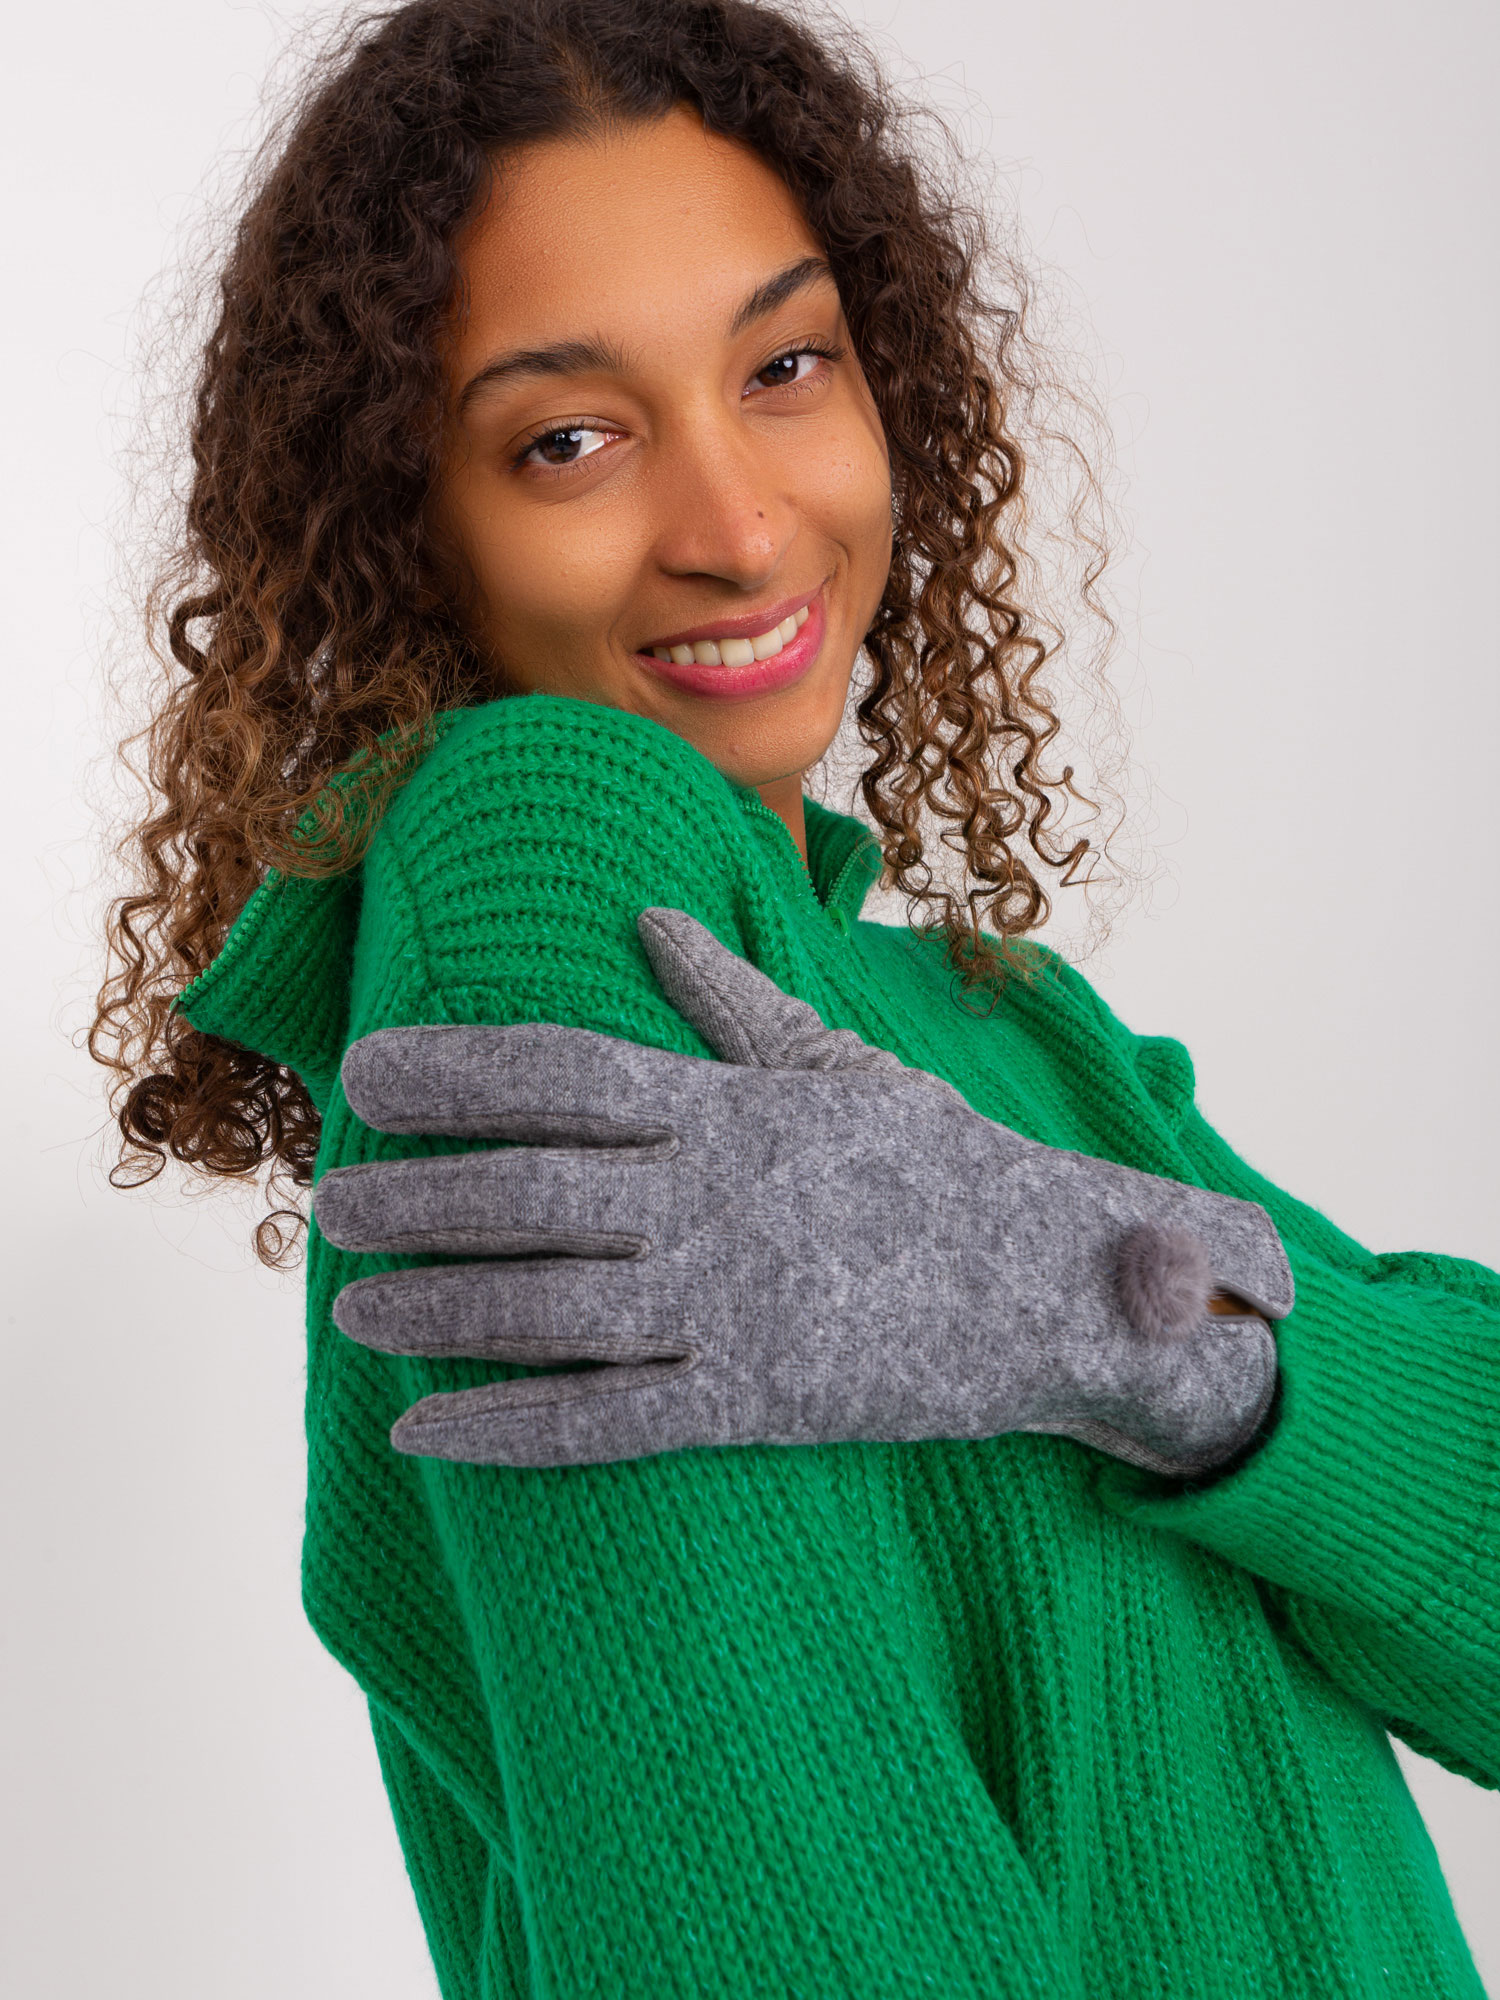 Tmavě šedé zimní rukavice AT-RK-239506.98-dark grey Velikost: L/XL